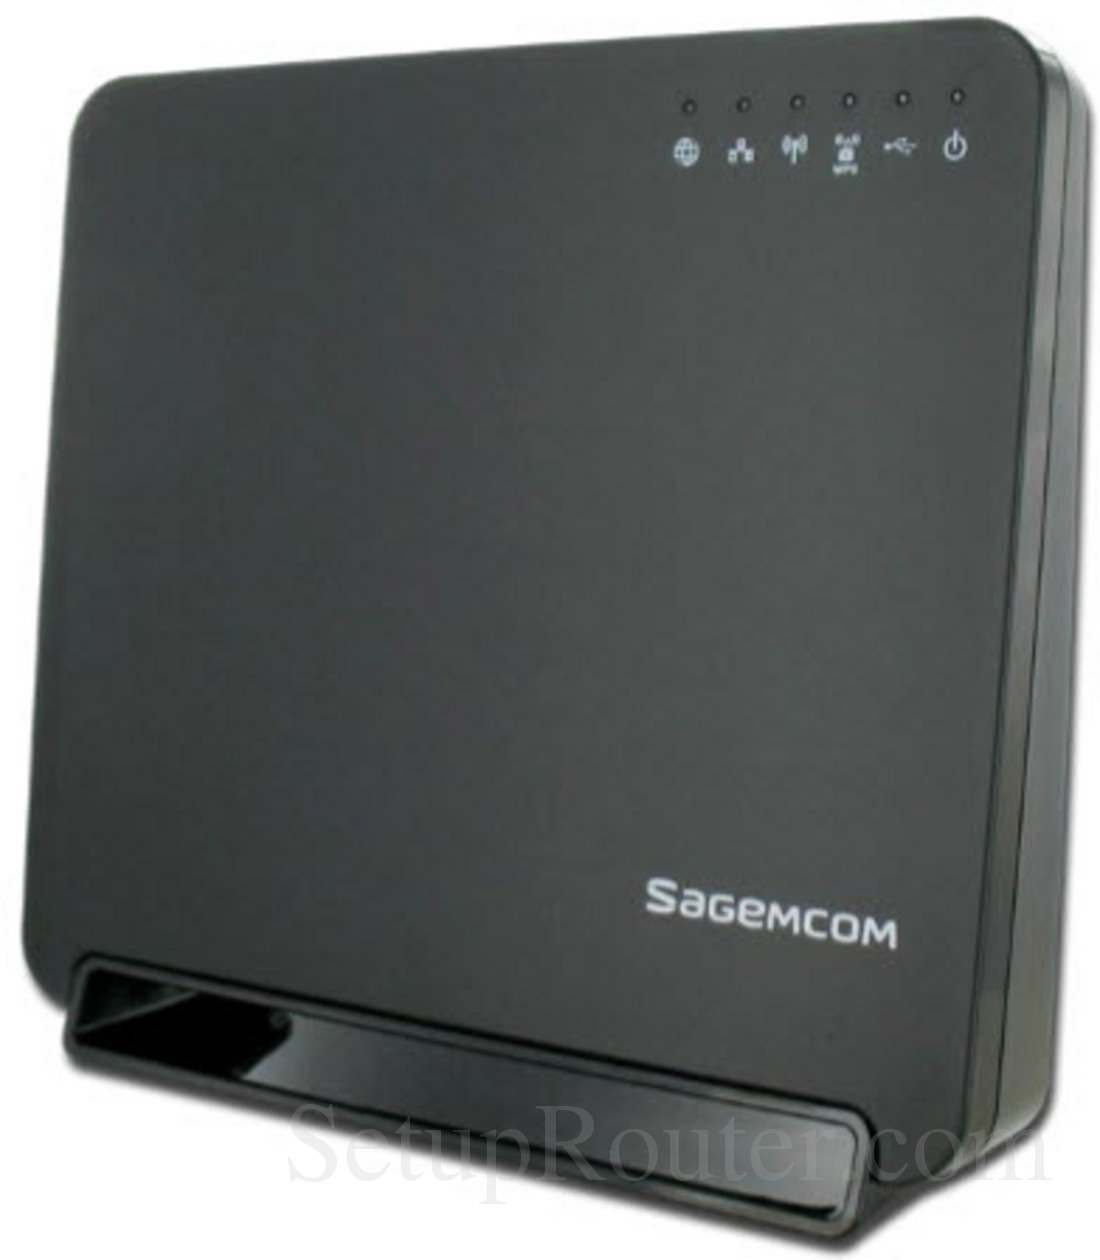 sagemcom telecentro firmware